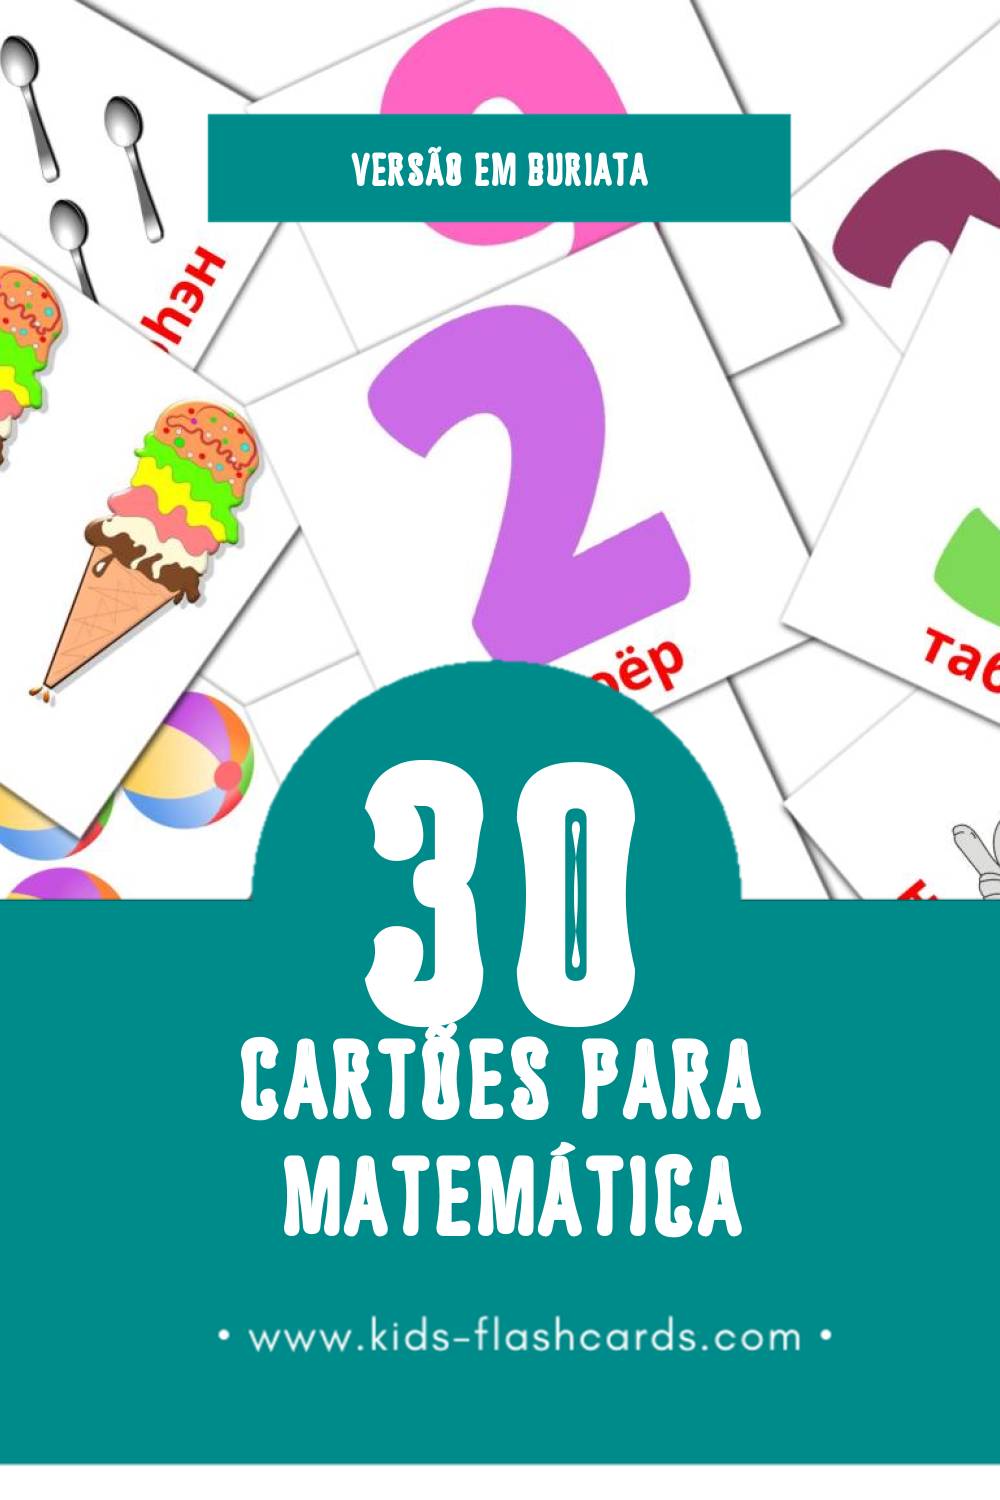 Flashcards de тоо бодолго Visuais para Toddlers (30 cartões em Buriata)